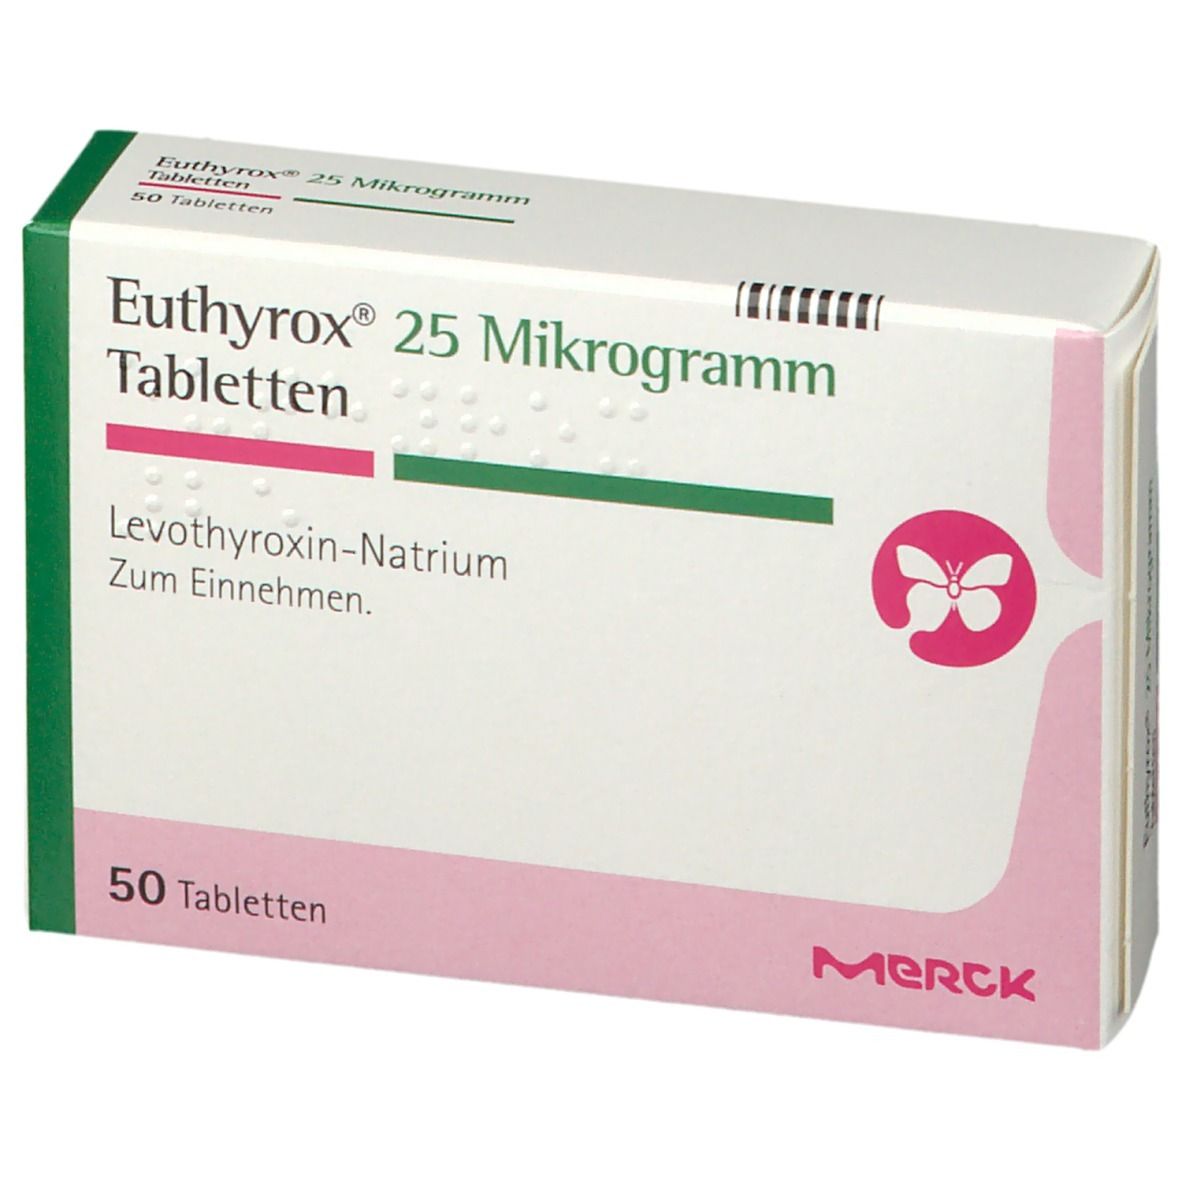 Euthyrox® 25 µg